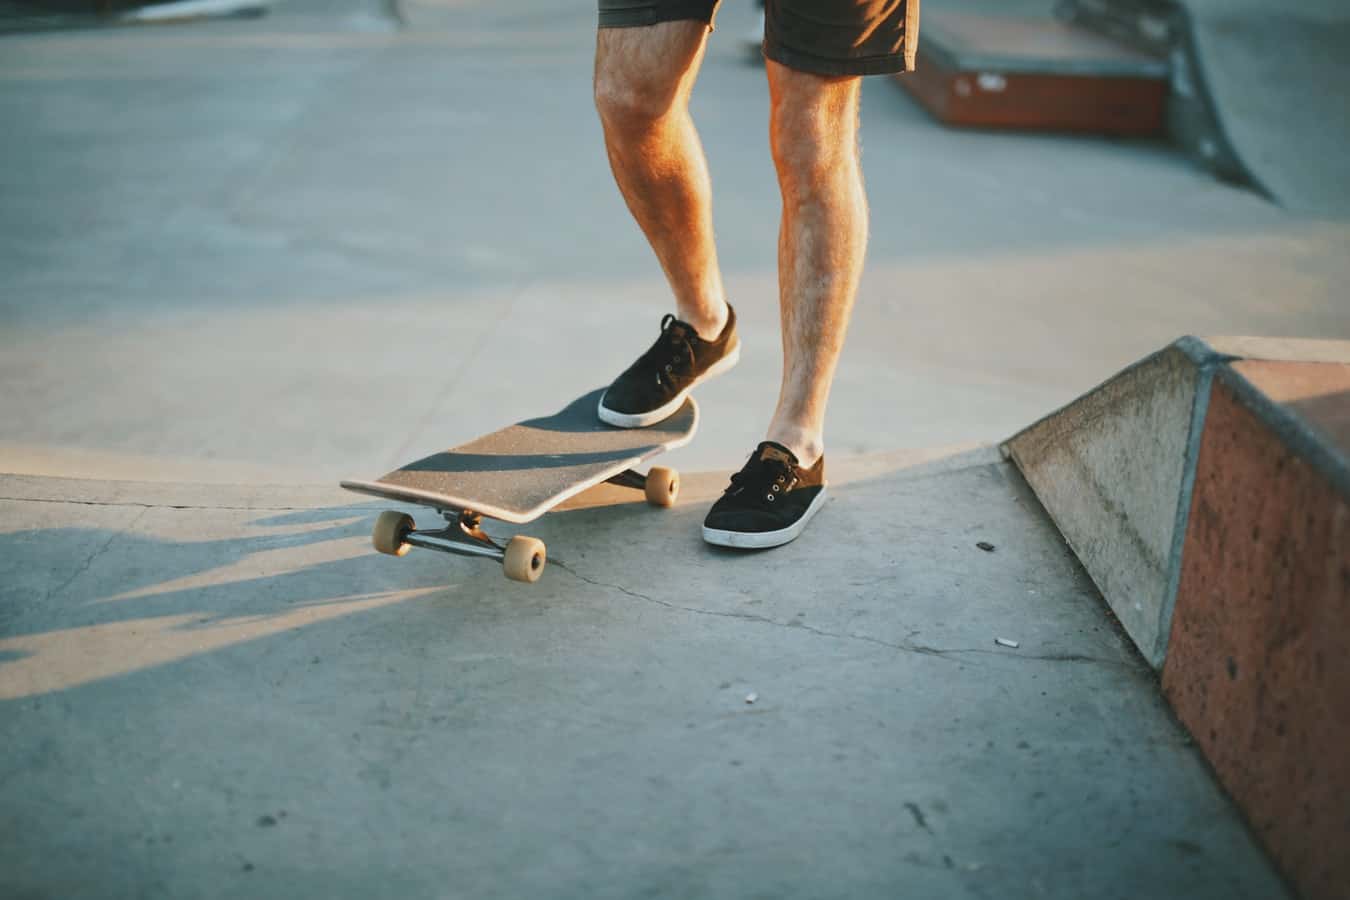 skateboard launch ramp